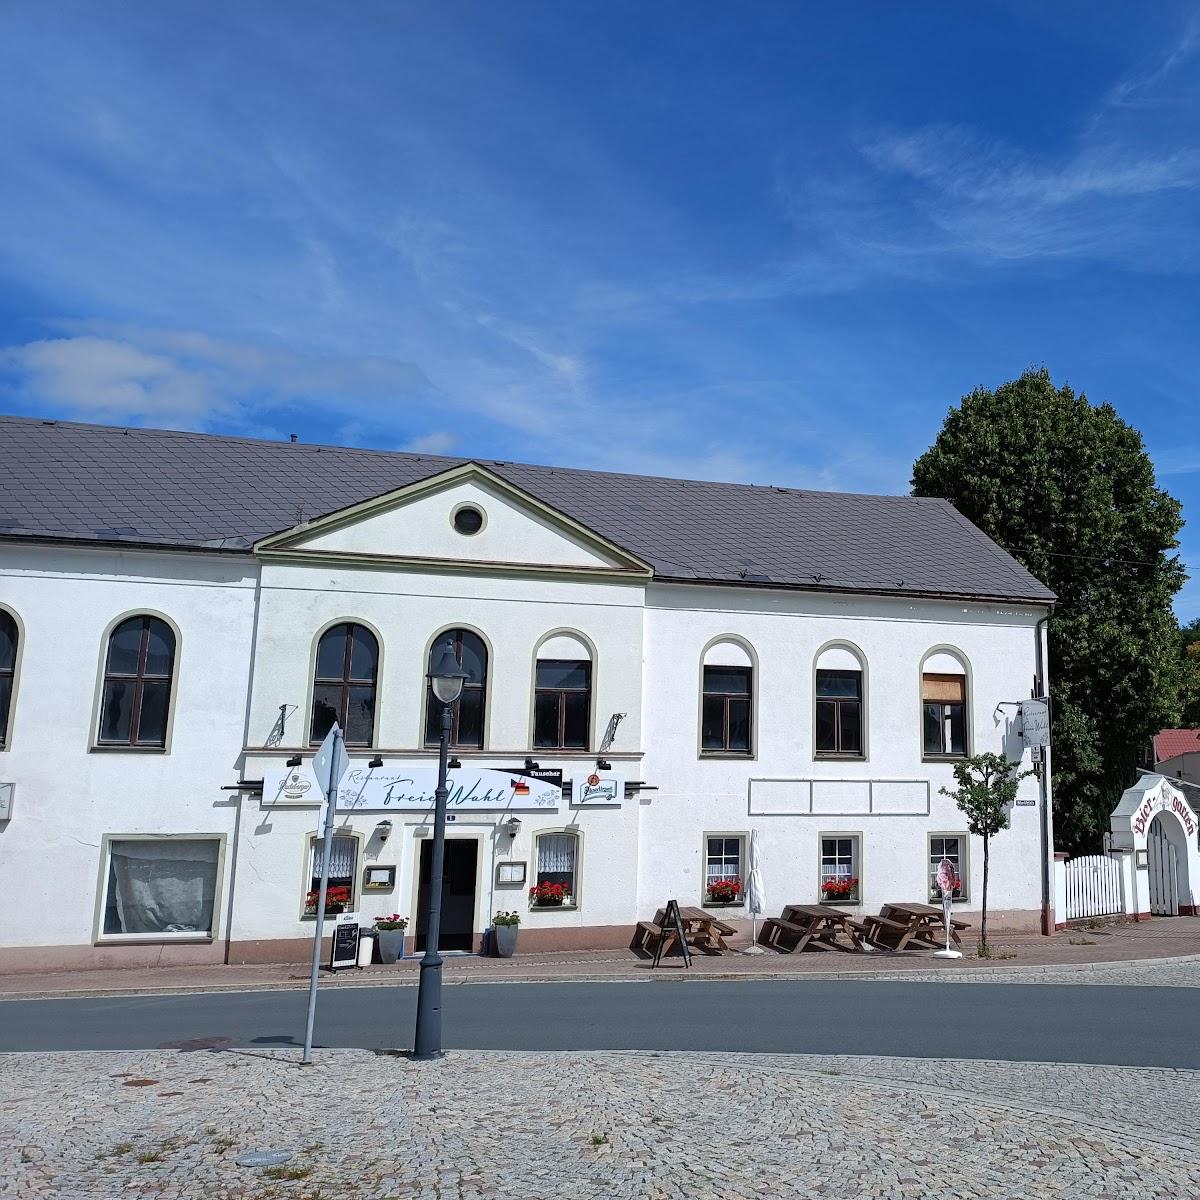 Restaurant "G. Tauscher" in Erlbach